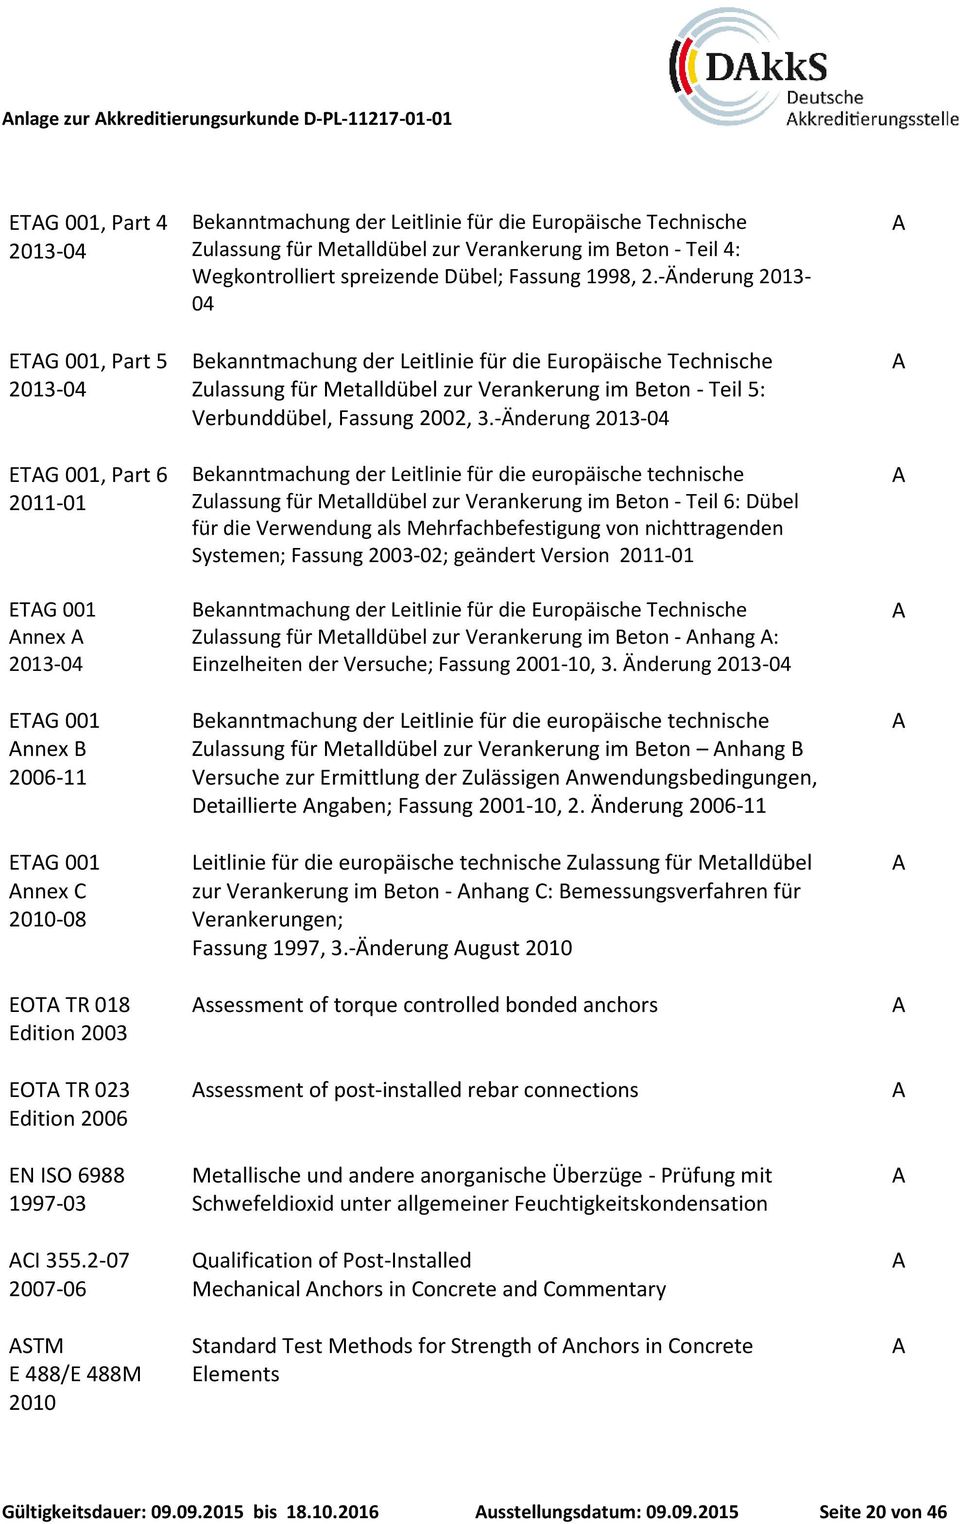 2-07 2007-06 STM E 488/E 488M 2010 ekanntmachung der Leitlinie für die Europäische Technische Zulassung für Metalldübel zur Verankerung im eton - Teil 4: Wegkontrolliert spreizende Dübel; Fassung